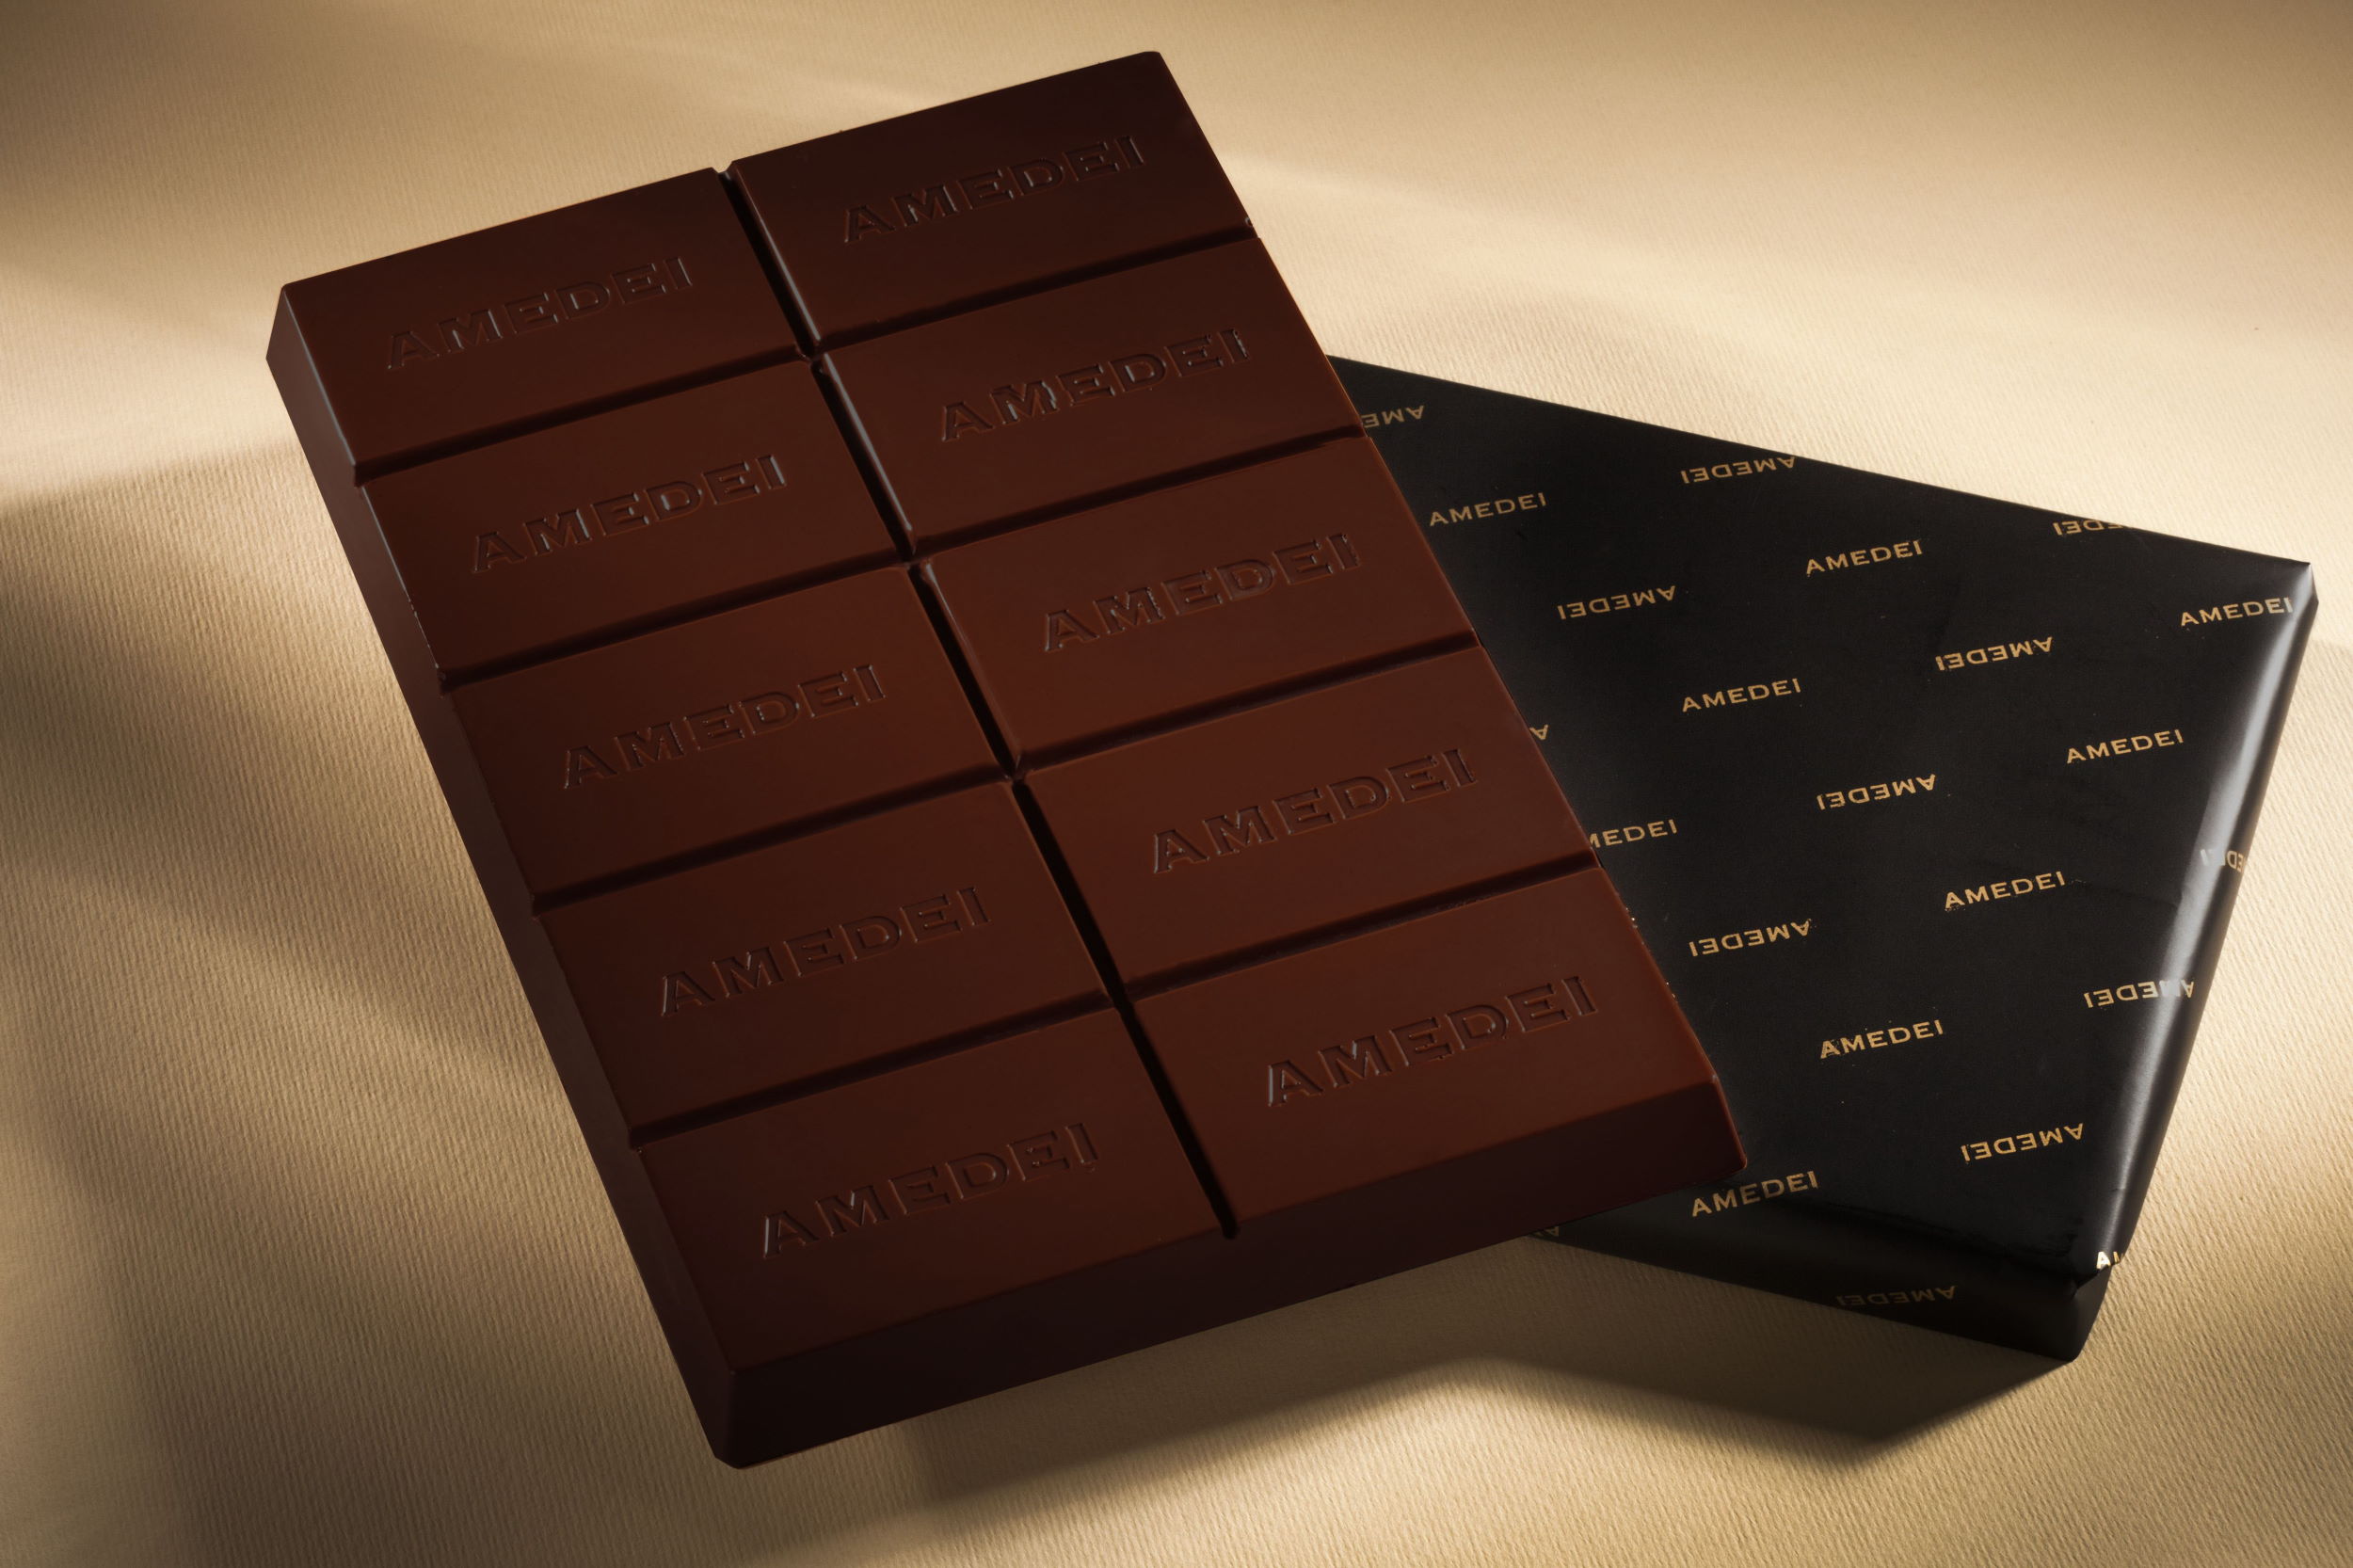 Amedei Blanco de Criollo 70% Dark Couverture Chocolate Block open